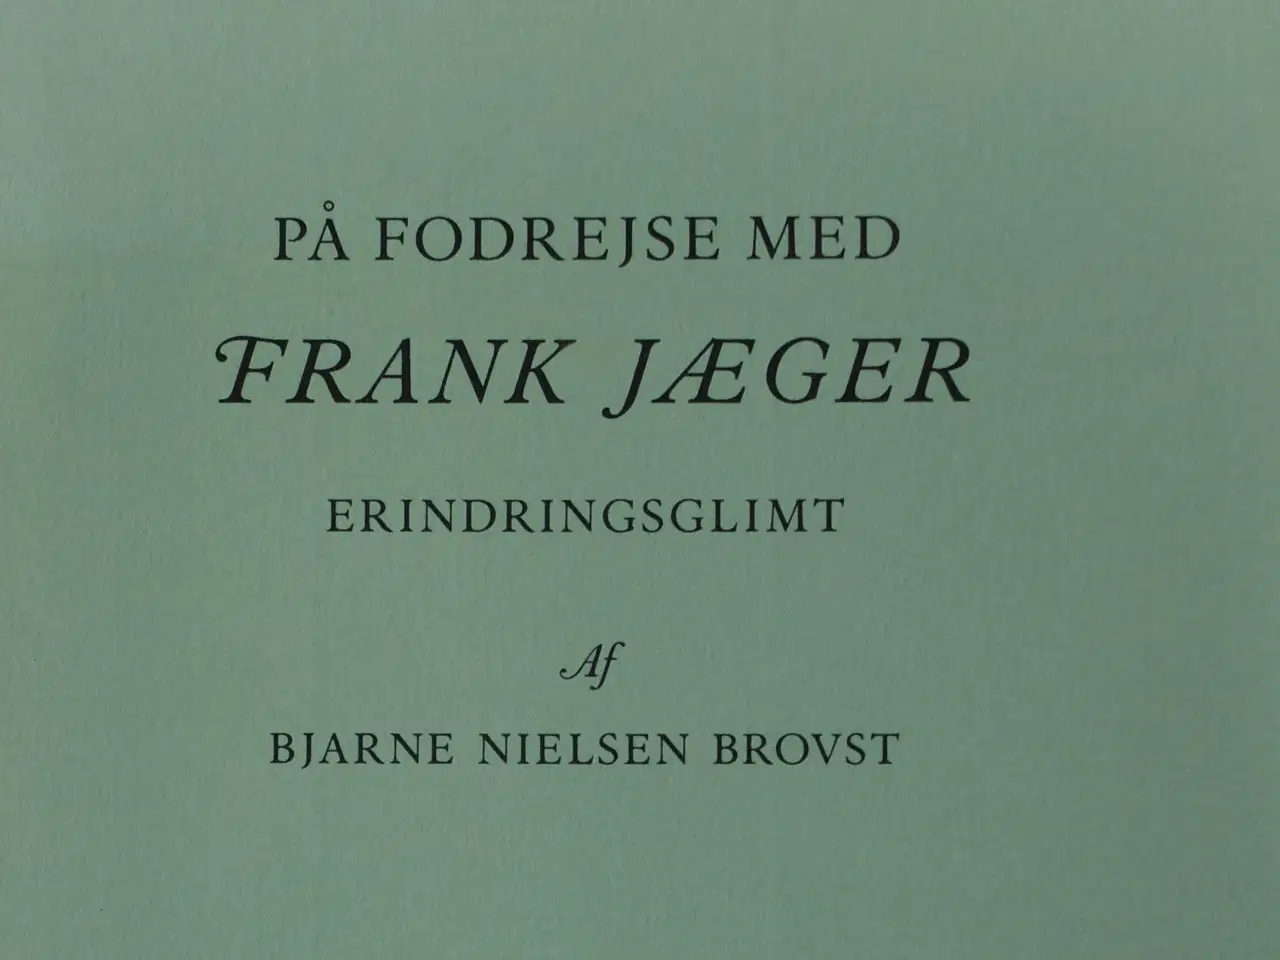 Billede 2 - På fodrejse med FRANK JÆGER